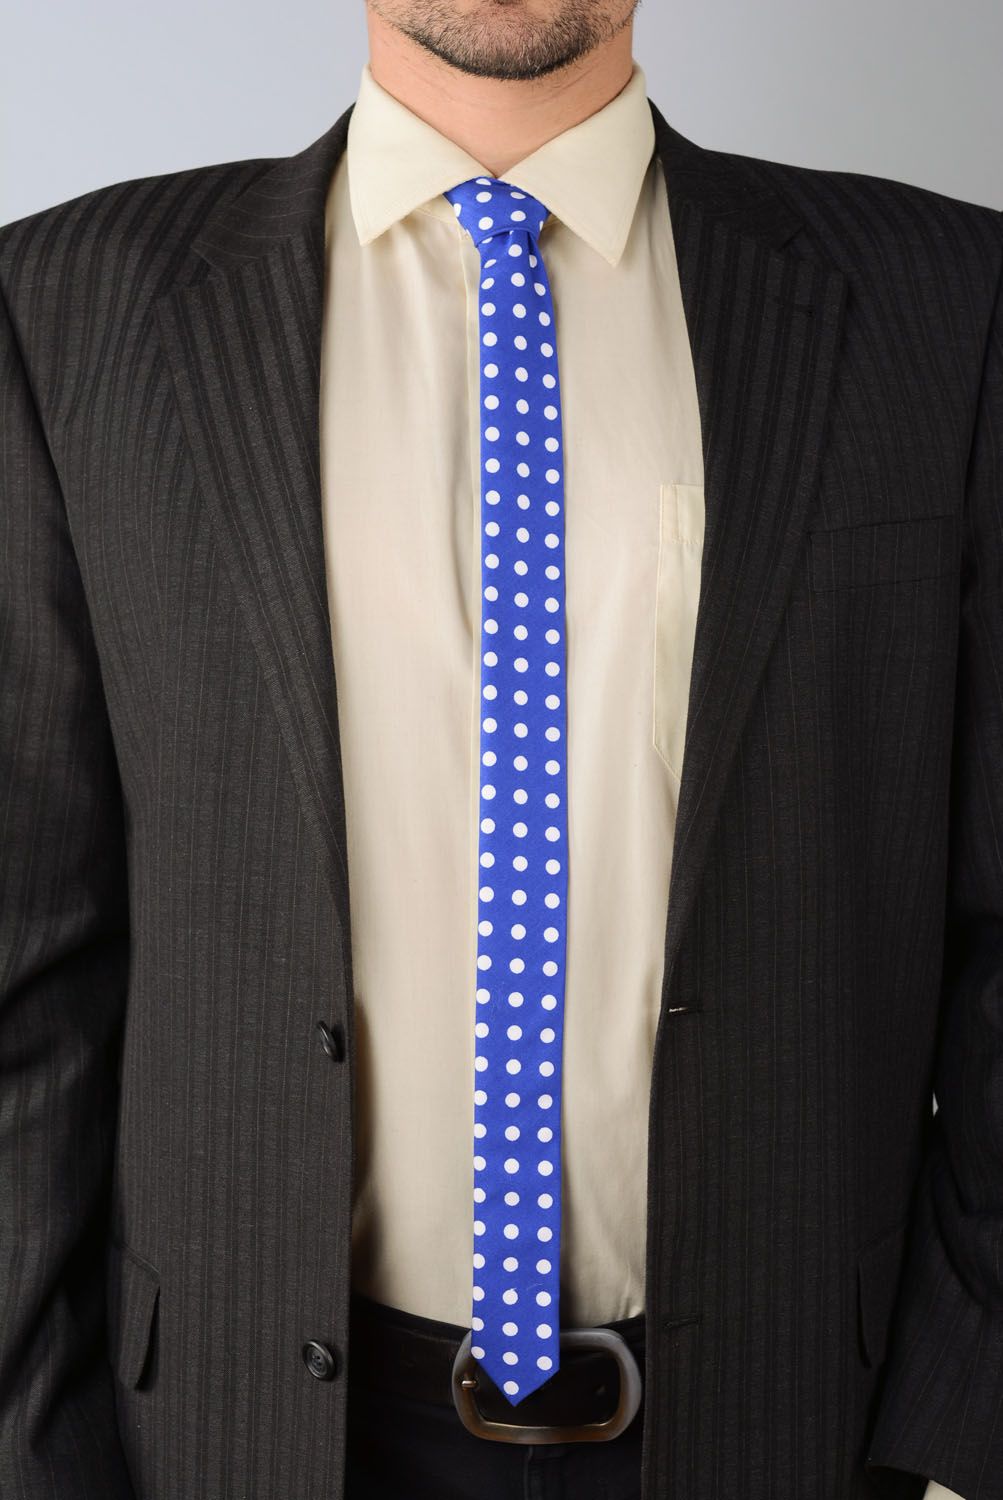 Schmale Krawatte gepunktet foto 1